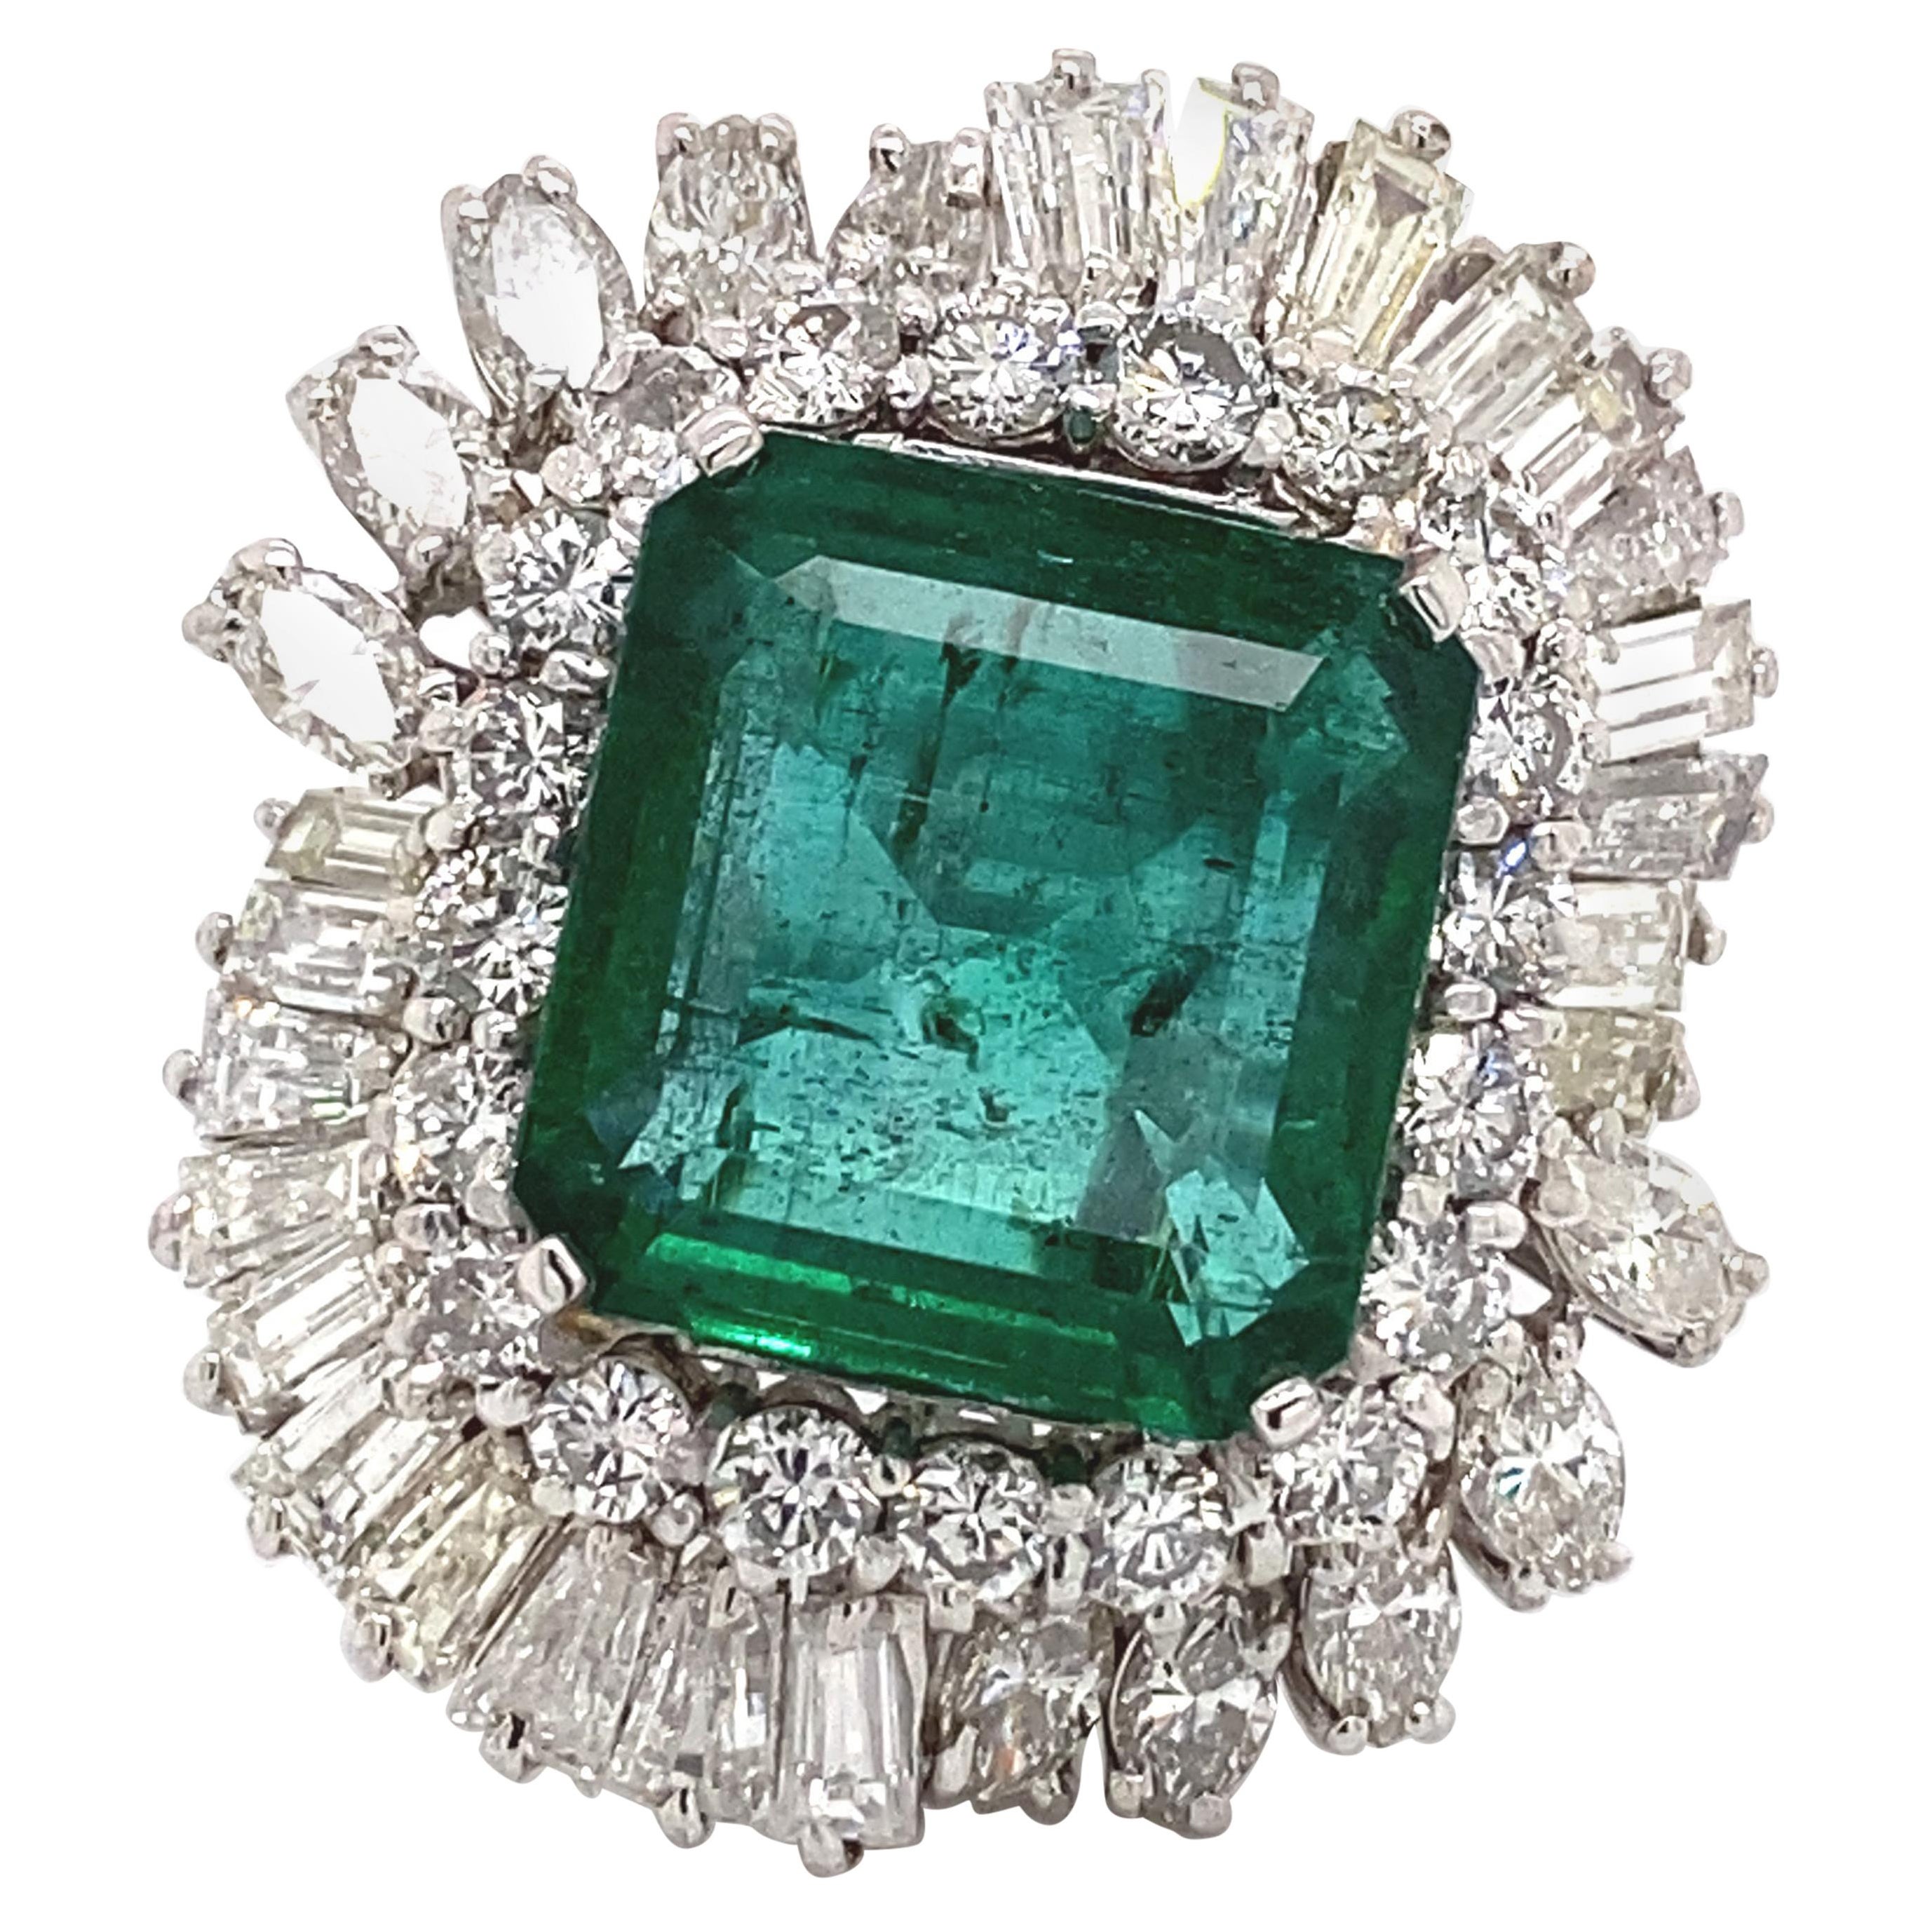 13.07 Carat Emerald with 8.90 Carat Diamonds Vintage Ring 18 Karat White Gold